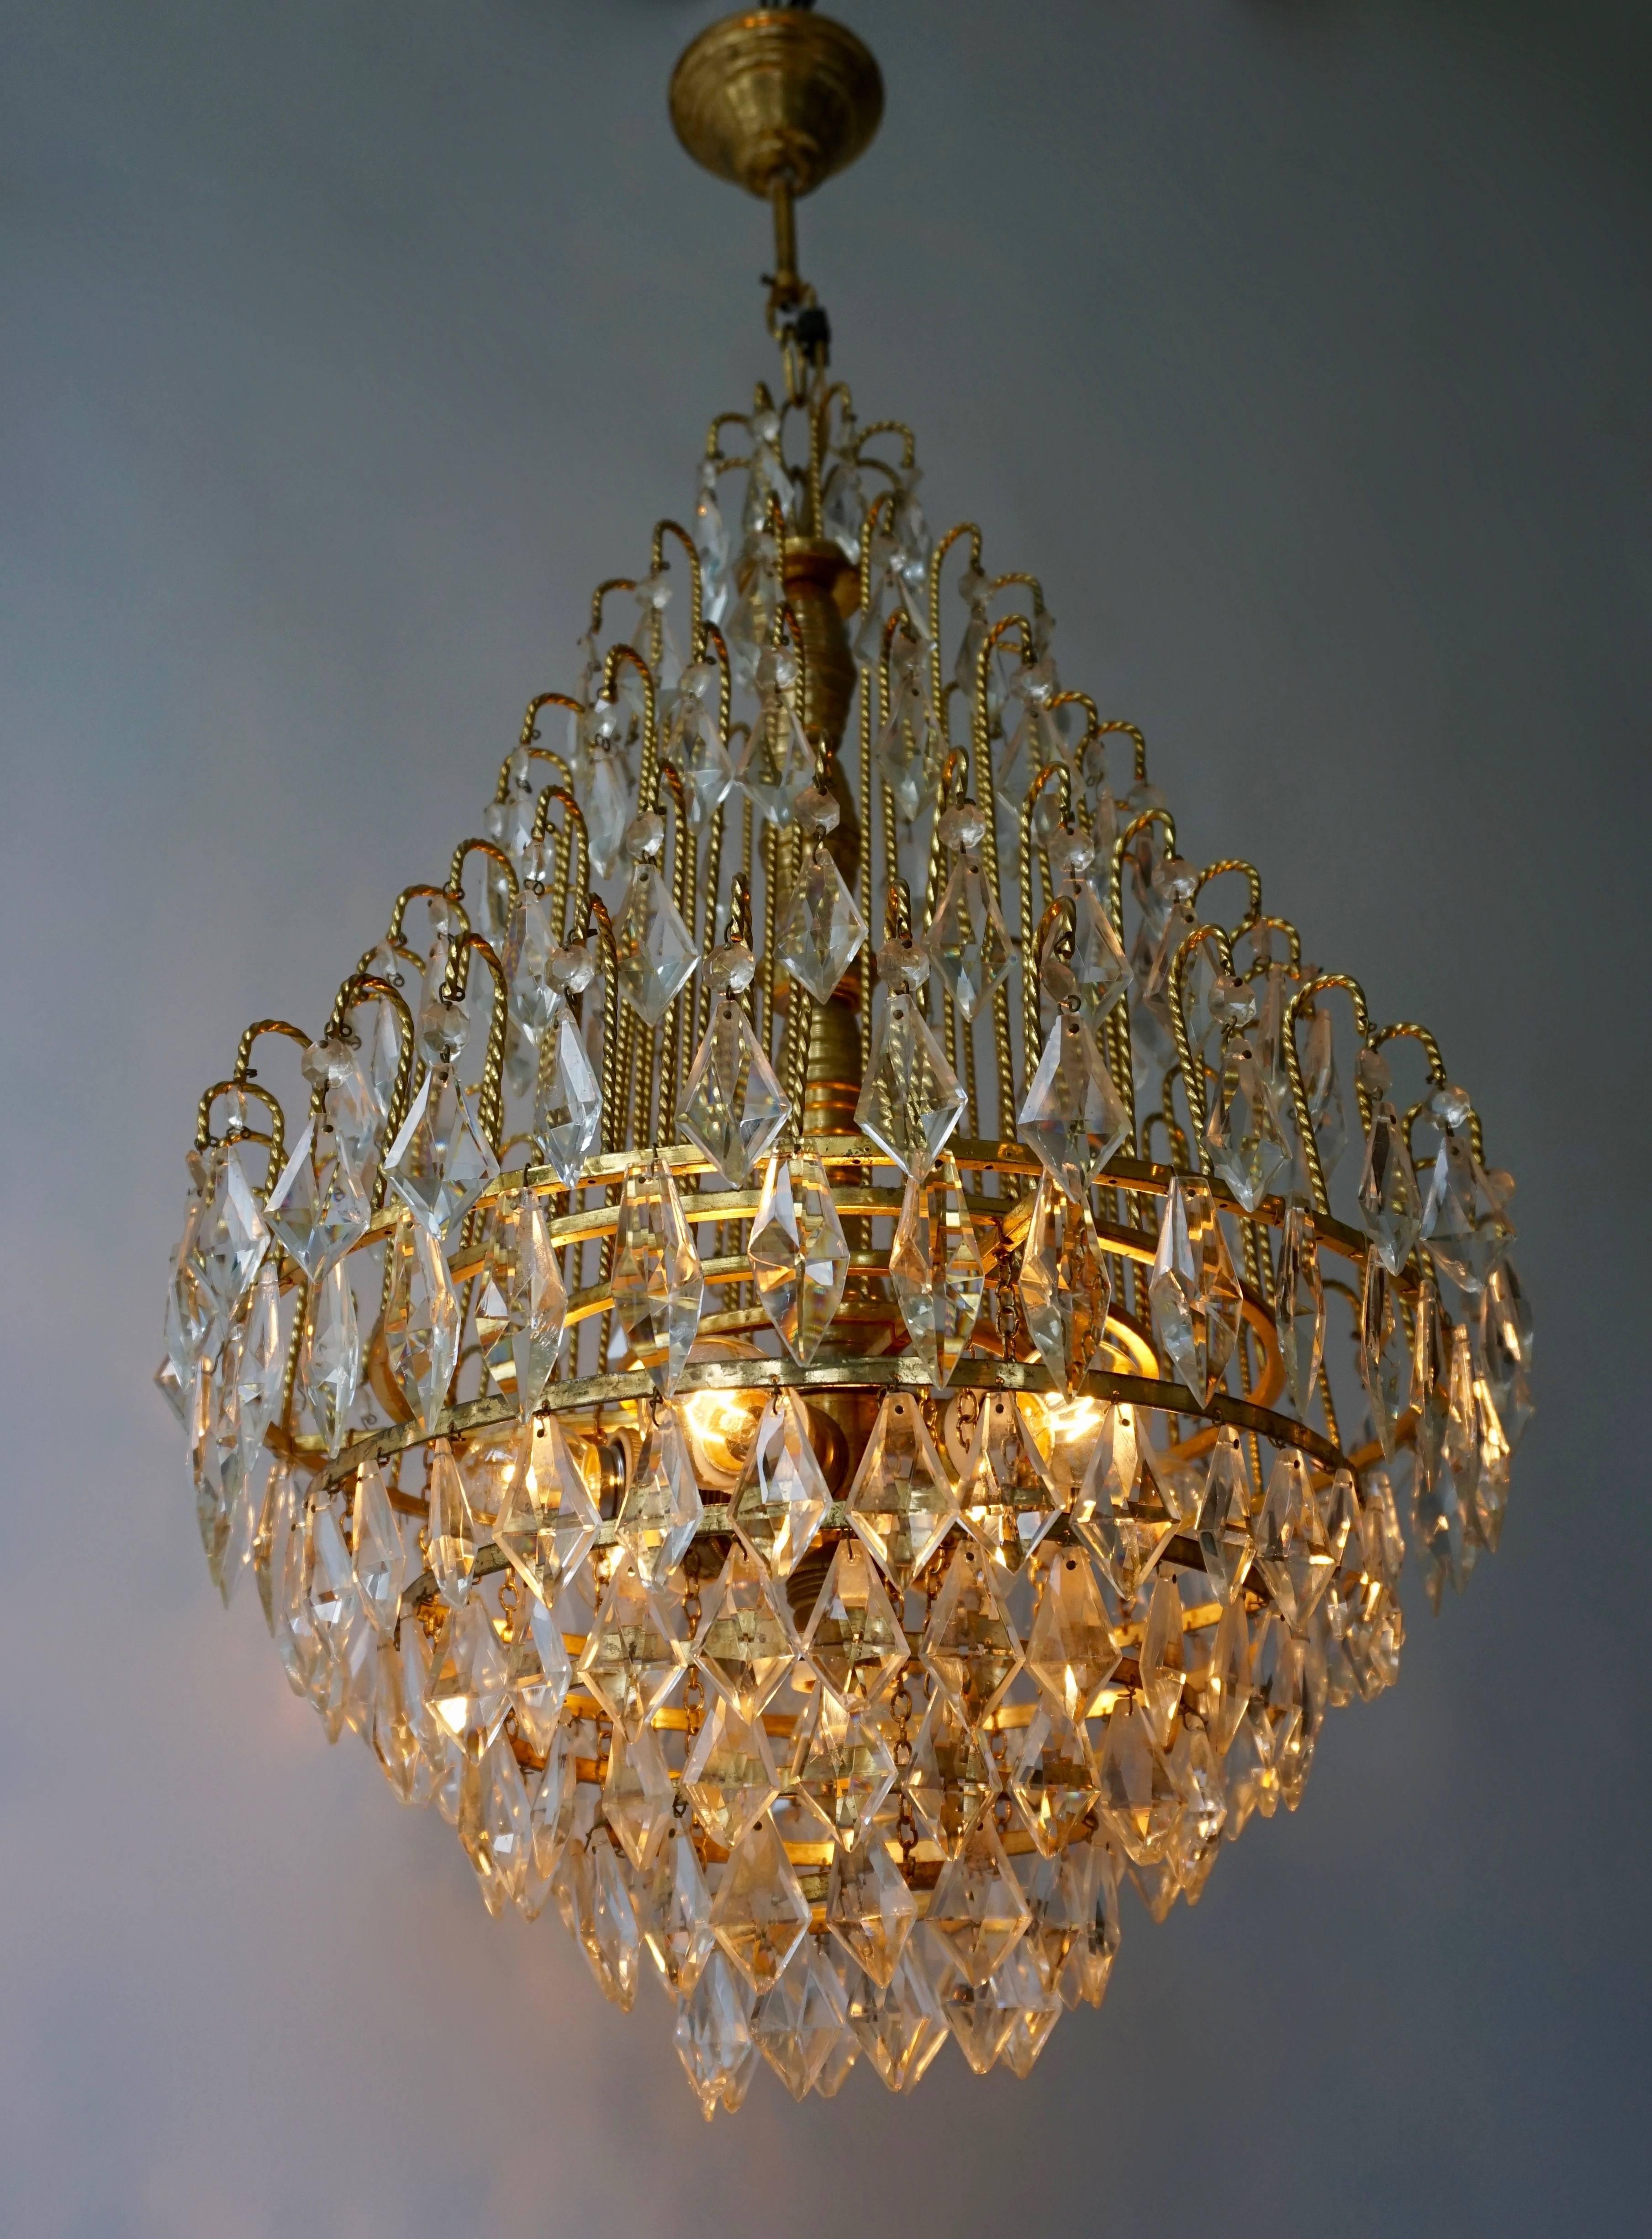 Eleganter Kronleuchter aus Messing und Kristall mit sieben E27 Glühbirnen.
Durchmesser 48 cm.
Höhe mit Kette 80 cm.
Höhe Halterung 62 cm.